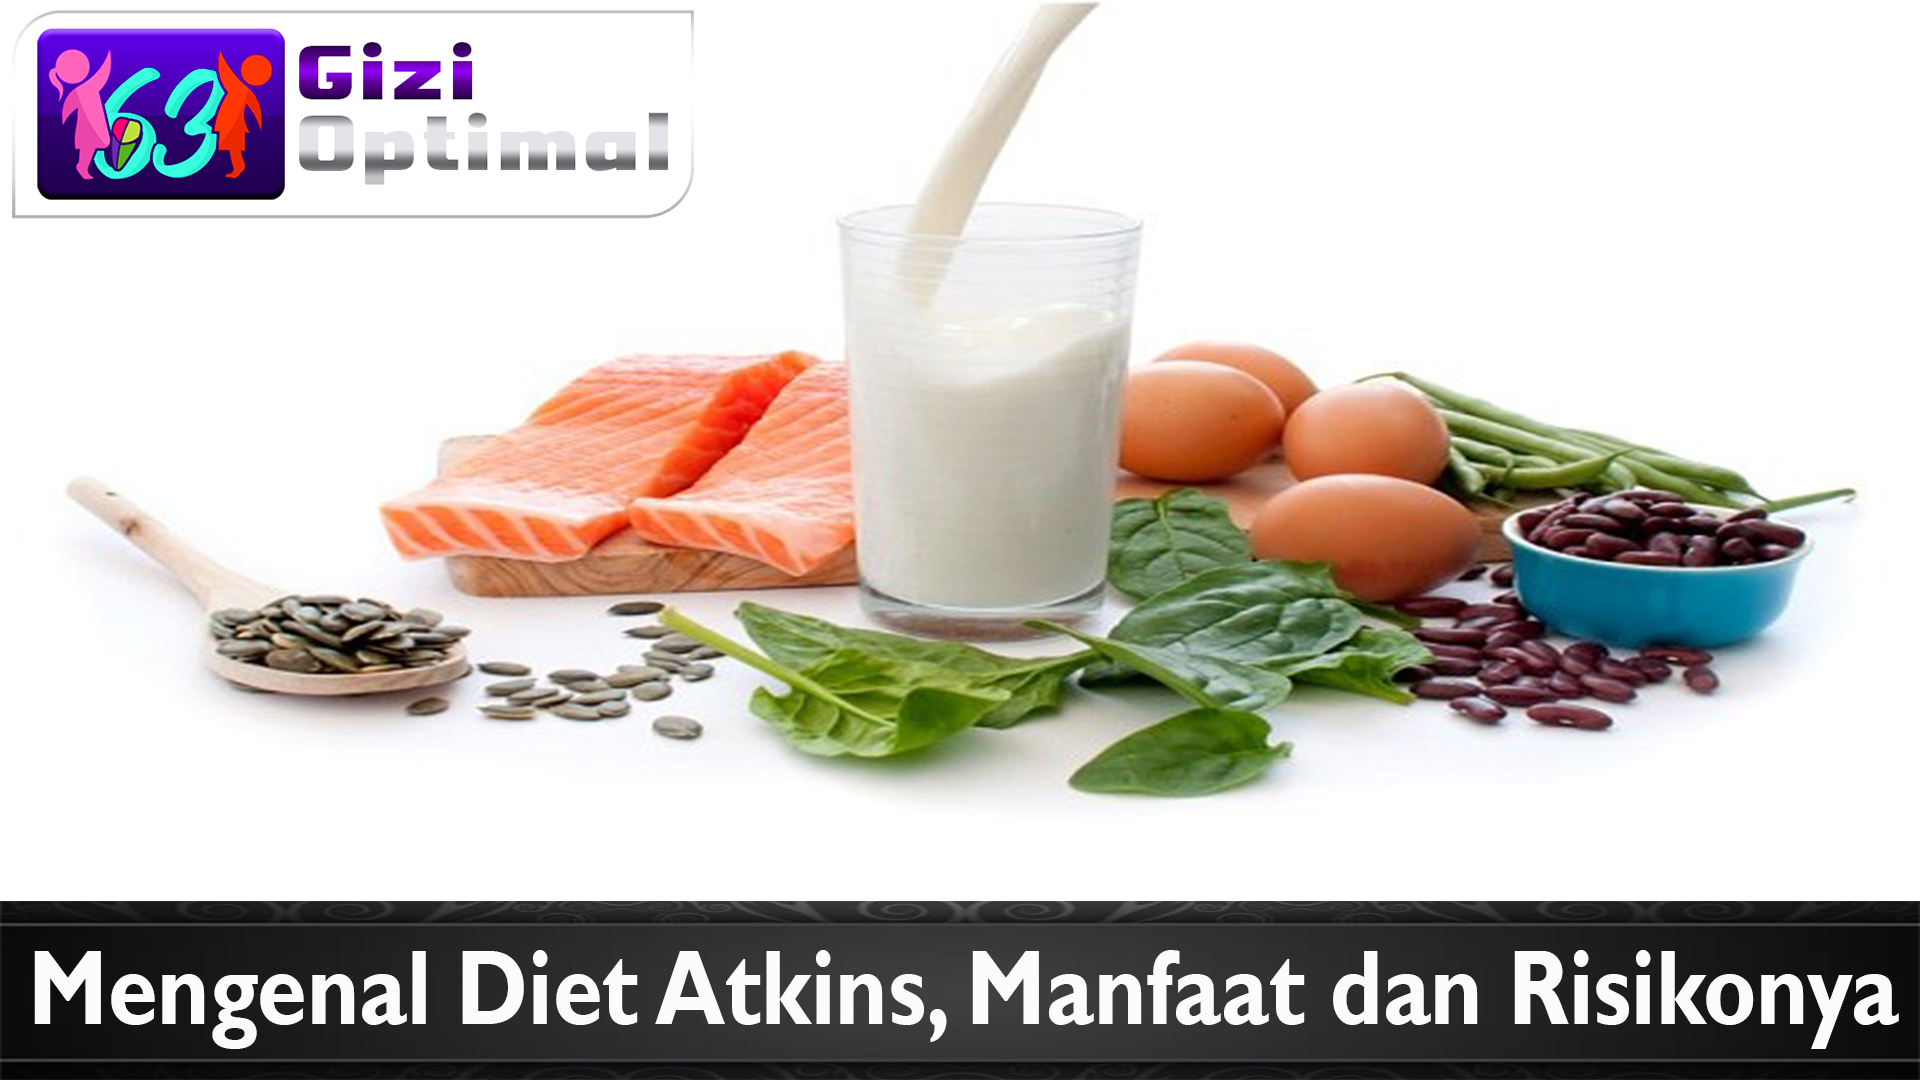 Mengenal Diet Atkins, Manfaat dan Risikonya